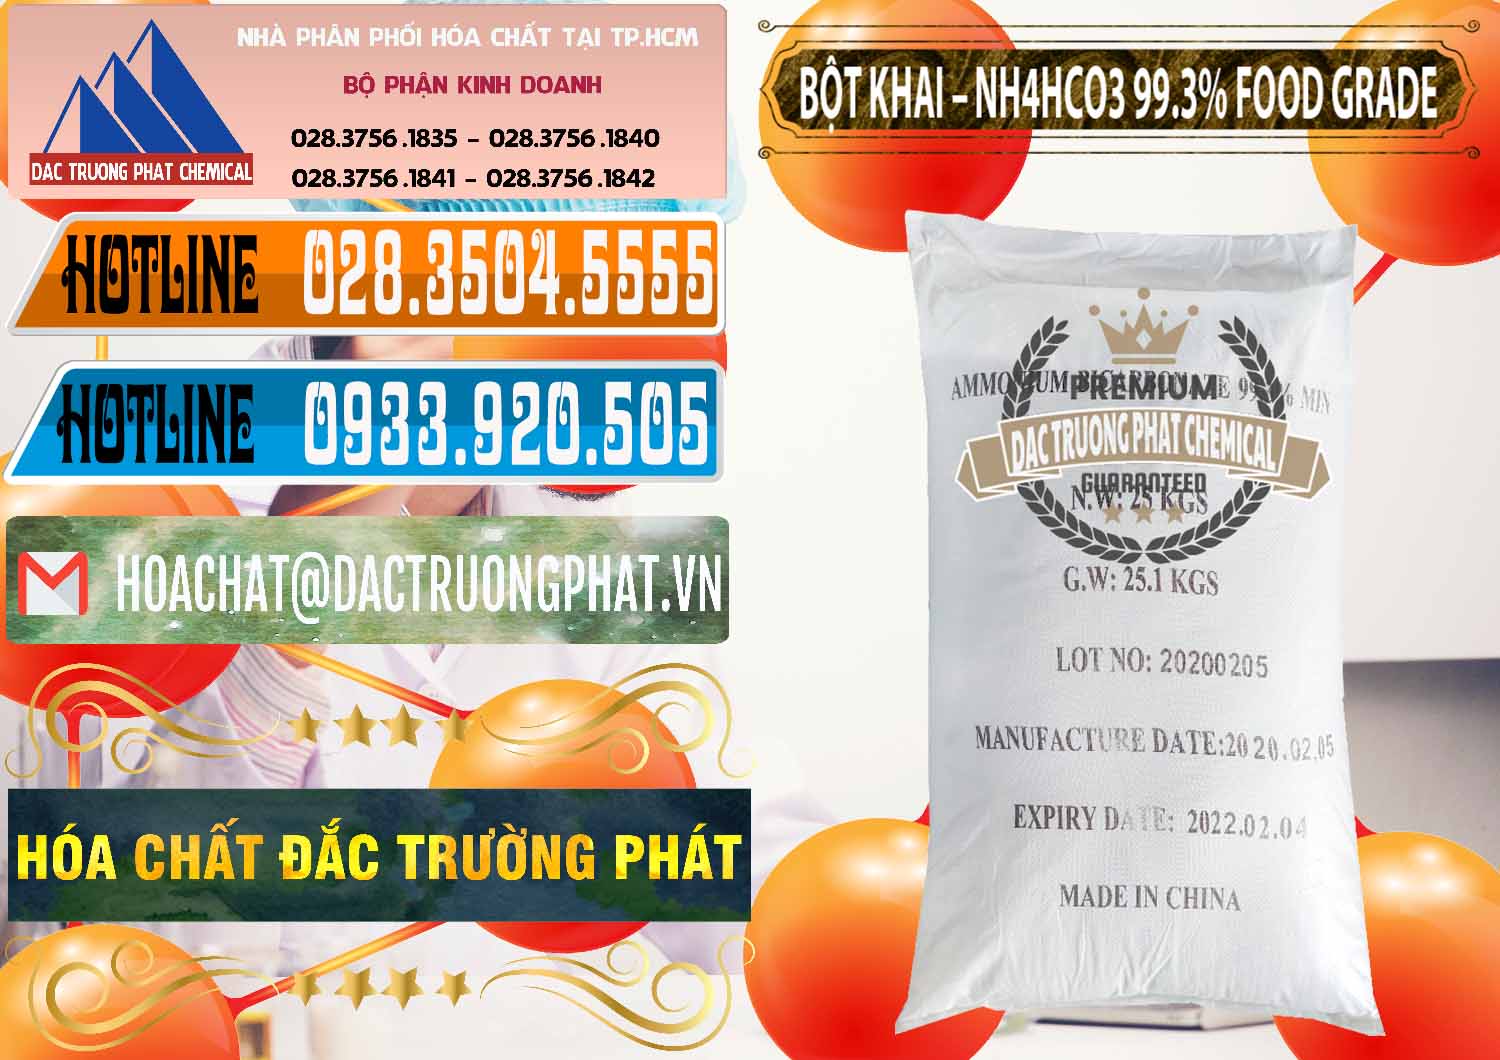 Chuyên bán & phân phối Ammonium Bicarbonate – Bột Khai NH4HCO3 Food Grade Trung Quốc China - 0019 - Cty chuyên cung cấp ( bán ) hóa chất tại TP.HCM - stmp.net